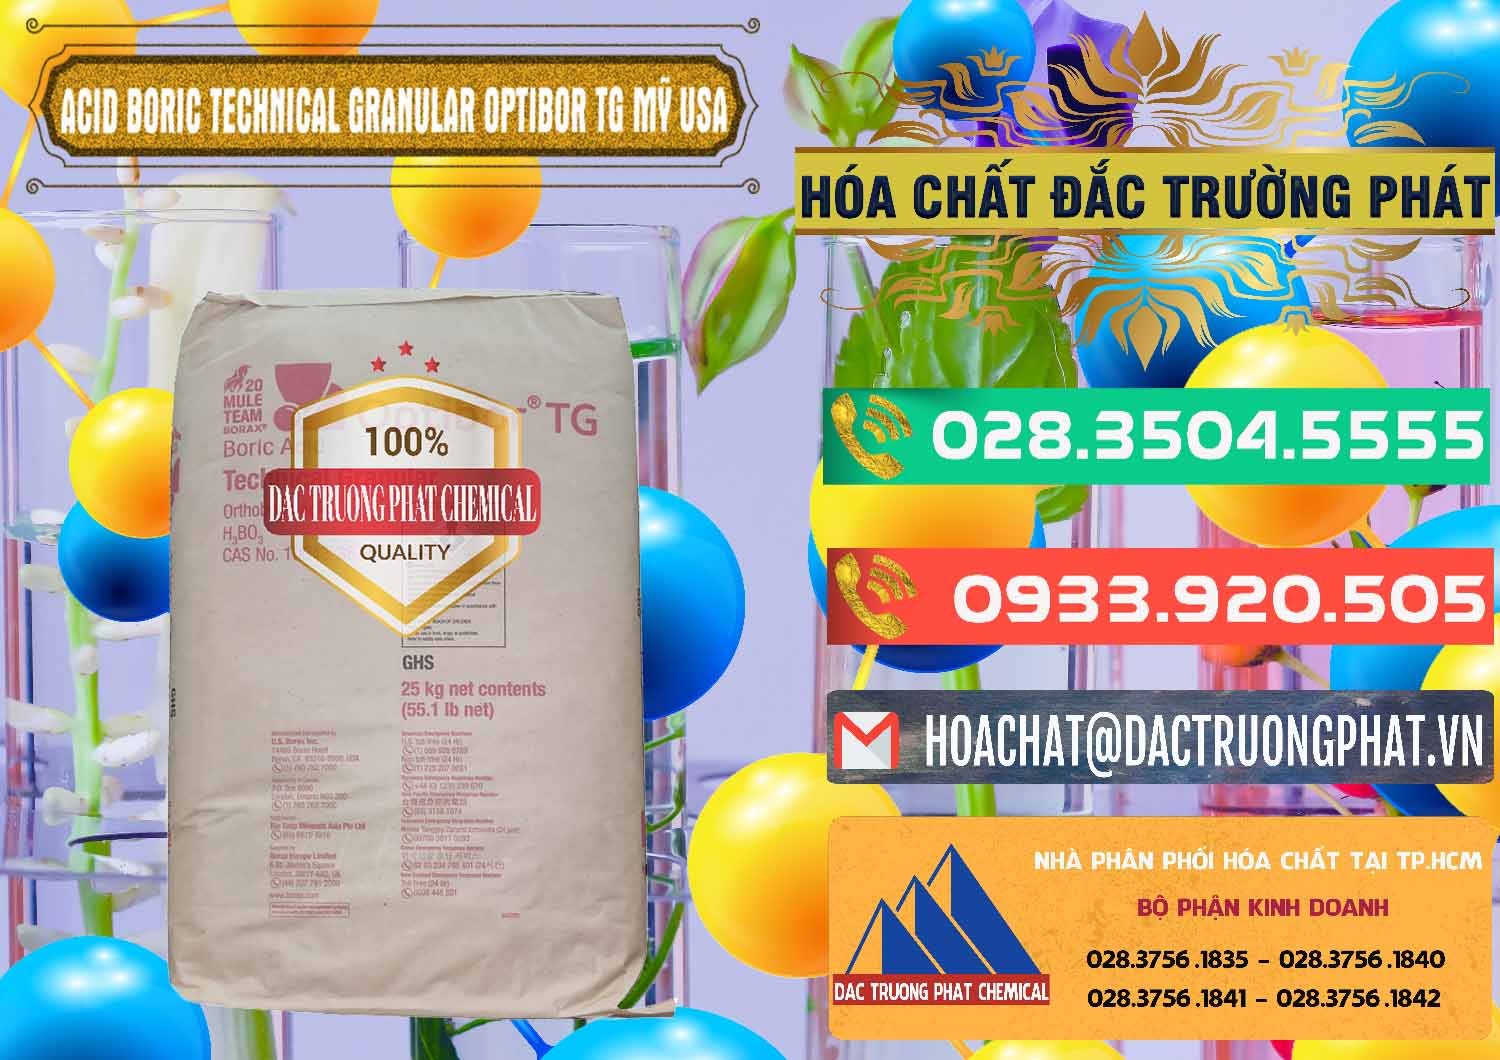 Nơi chuyên cung cấp _ bán Acid Boric – Axit Boric H3BO3 99% New 2021 Mỹ USA OPTIBOR® TG - 0226 - Đơn vị chuyên bán & phân phối hóa chất tại TP.HCM - congtyhoachat.com.vn